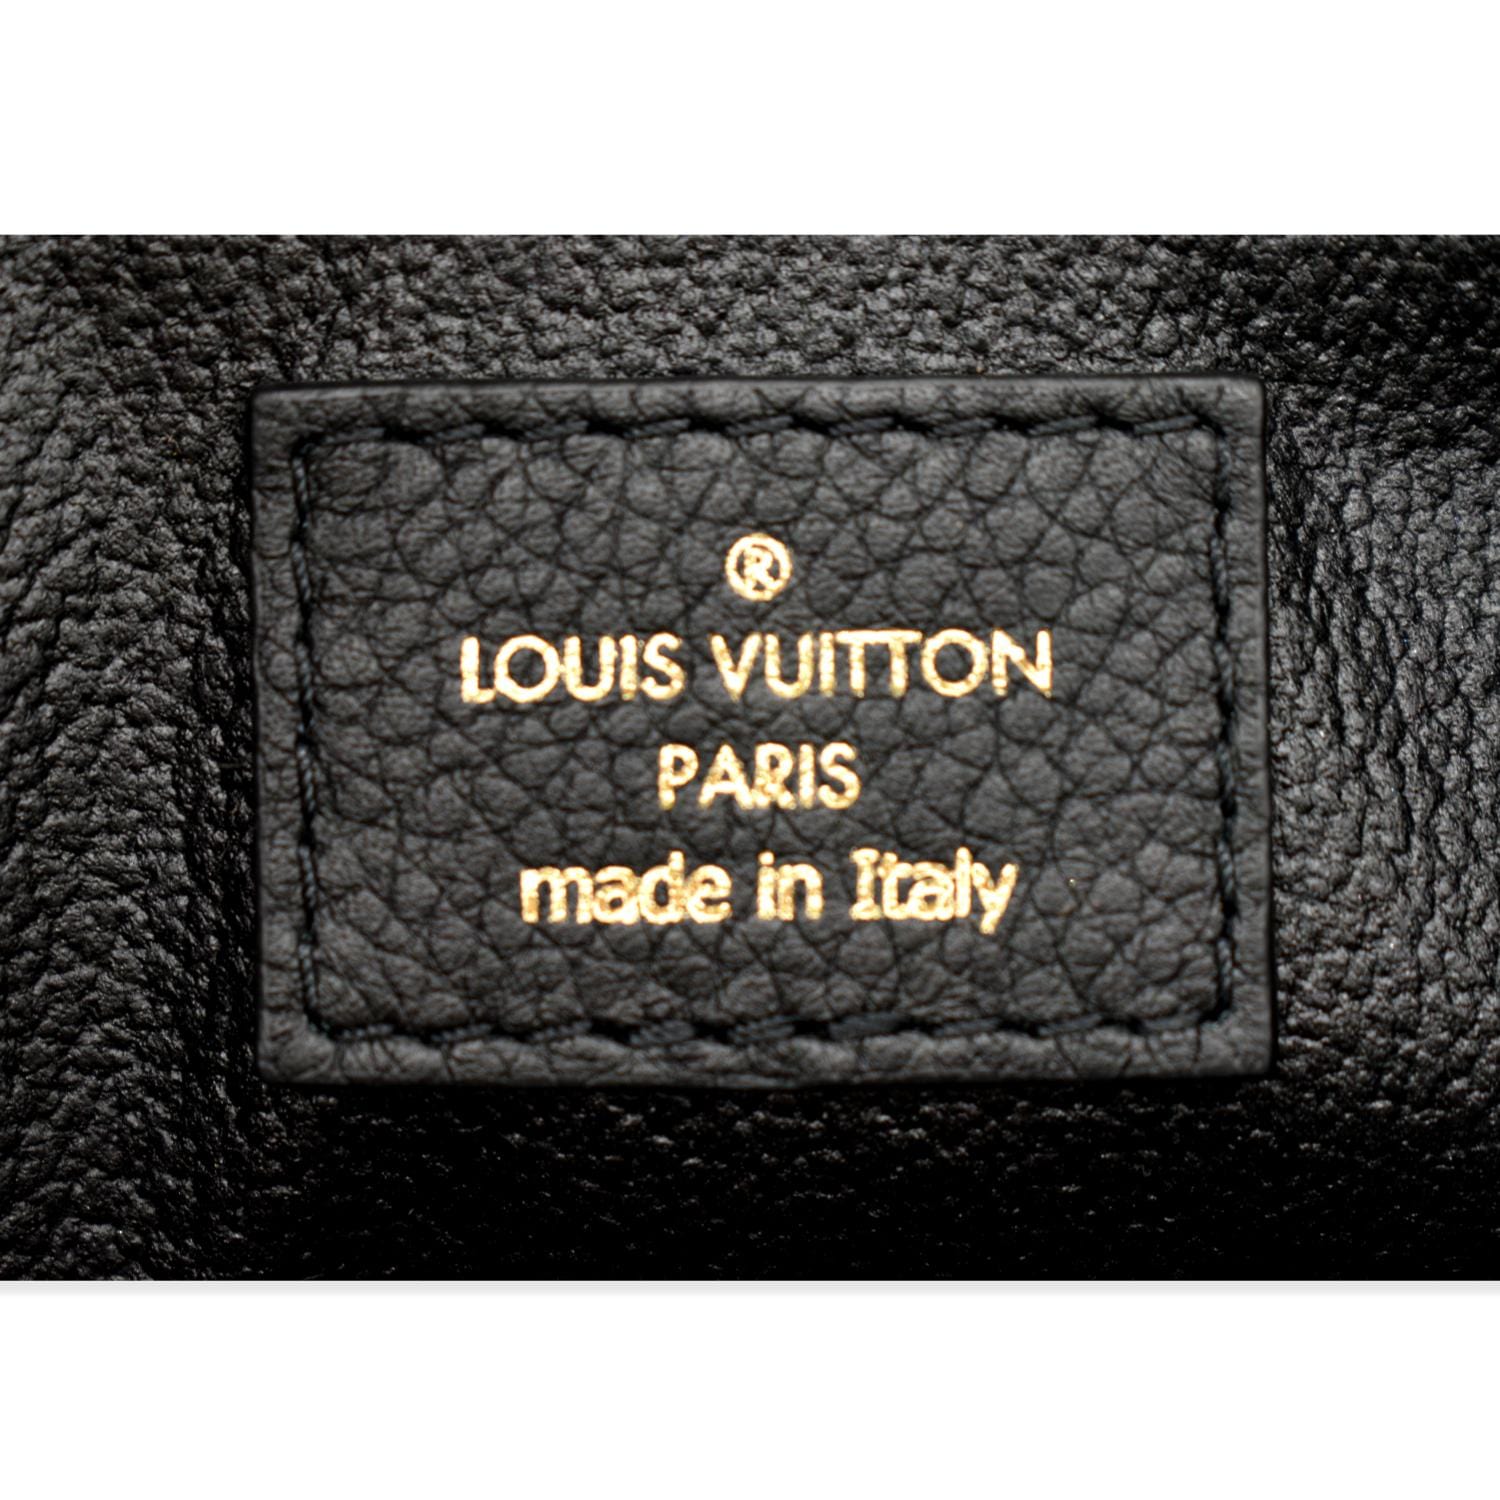 Shop Louis Vuitton Pallas beauty case (M64123) by CITYMONOSHOP